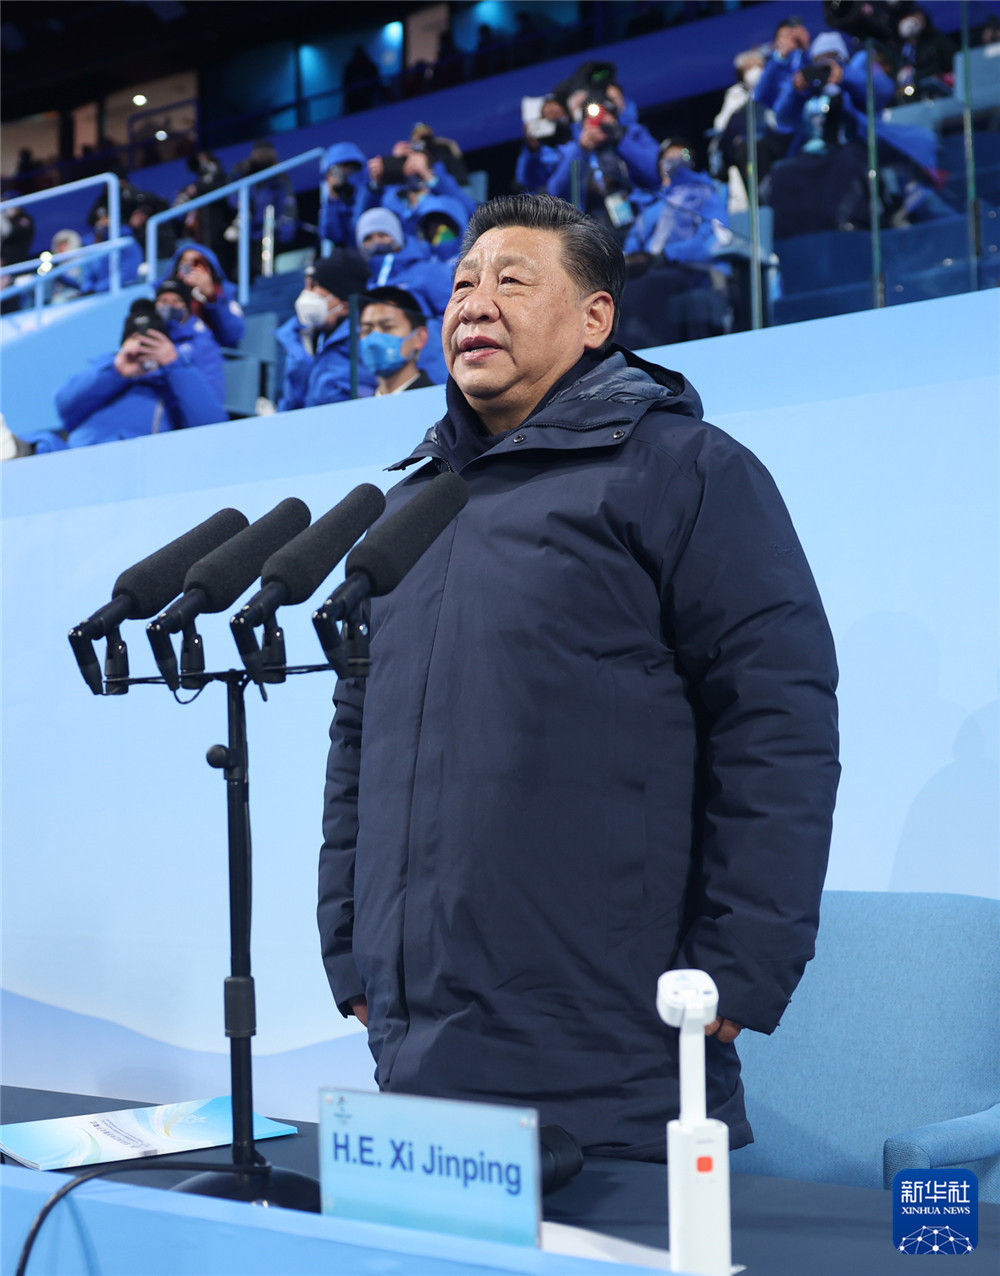 第二十四届冬奥会在北京开幕 习近平出席开幕式并宣布本届冬奥会开幕